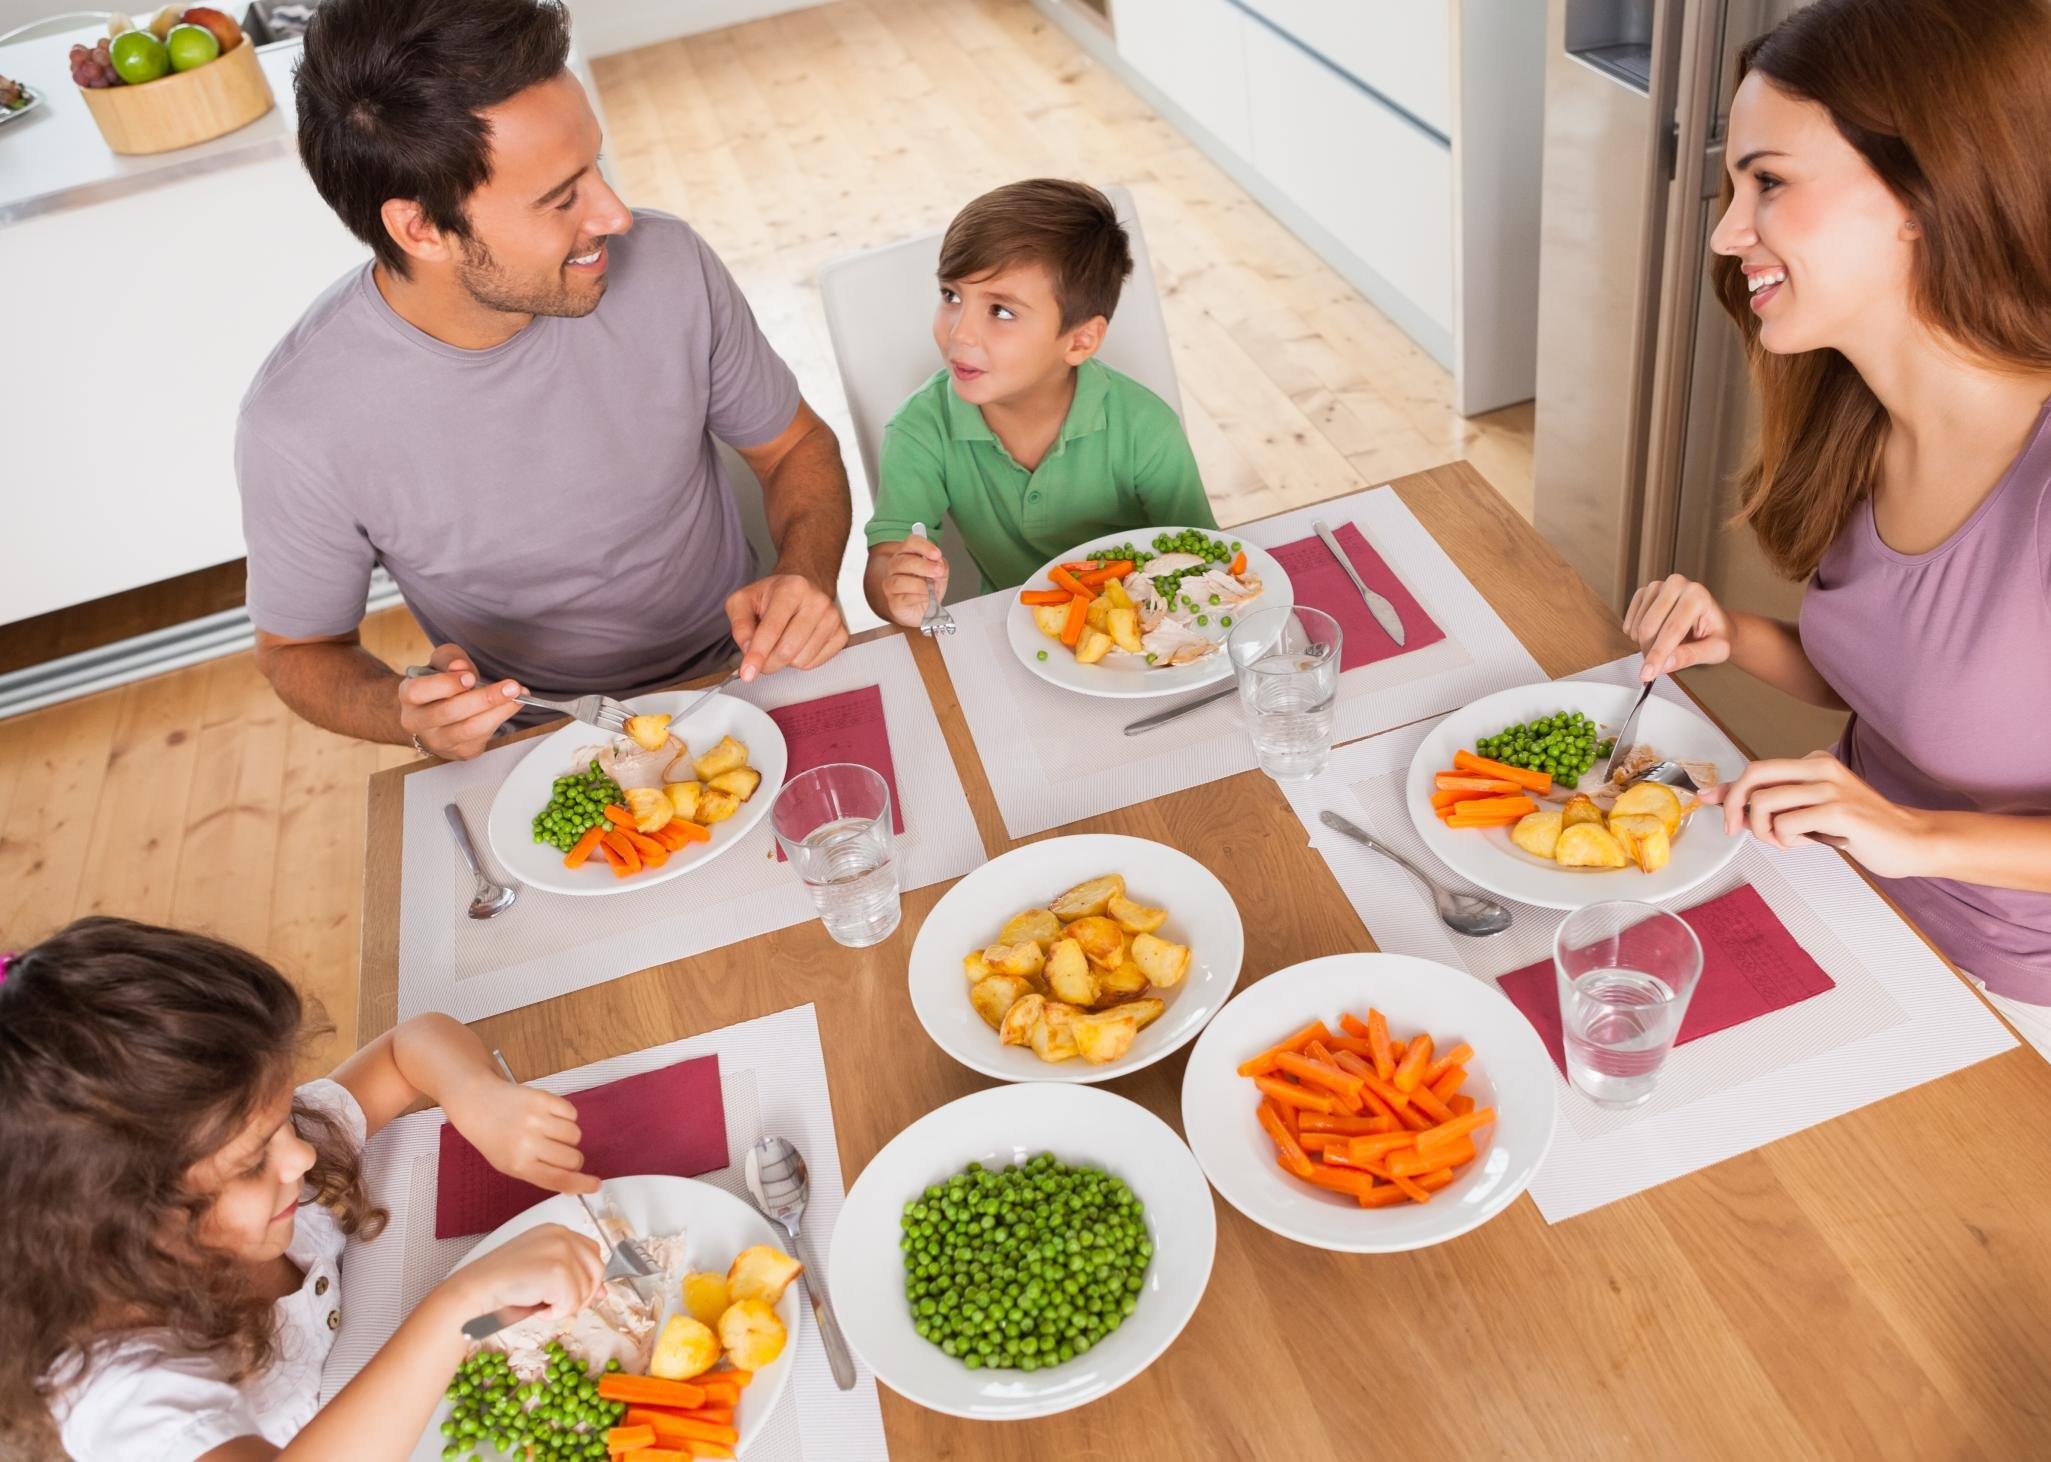 Накормить постящегося. Питание детей. Ужин с семьей. Семья обед. Здоровое питание в семье.